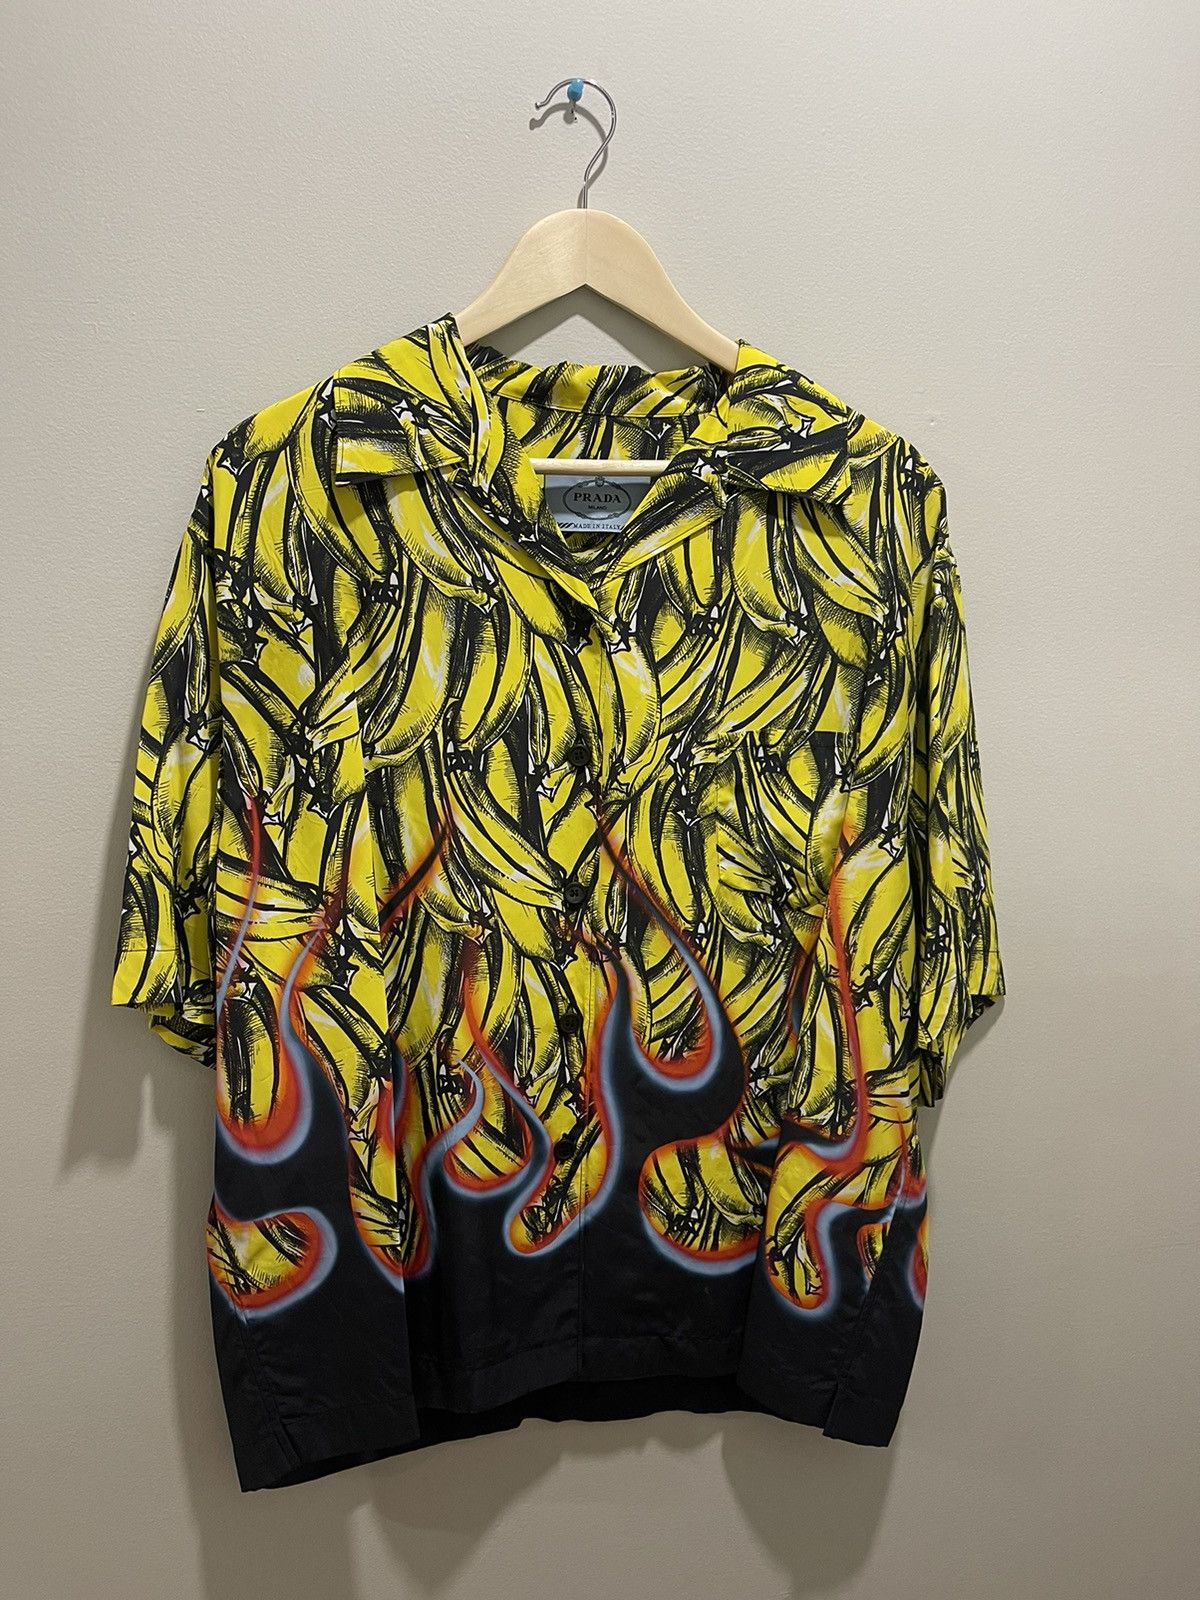 Prada Banana Shirt | Grailed